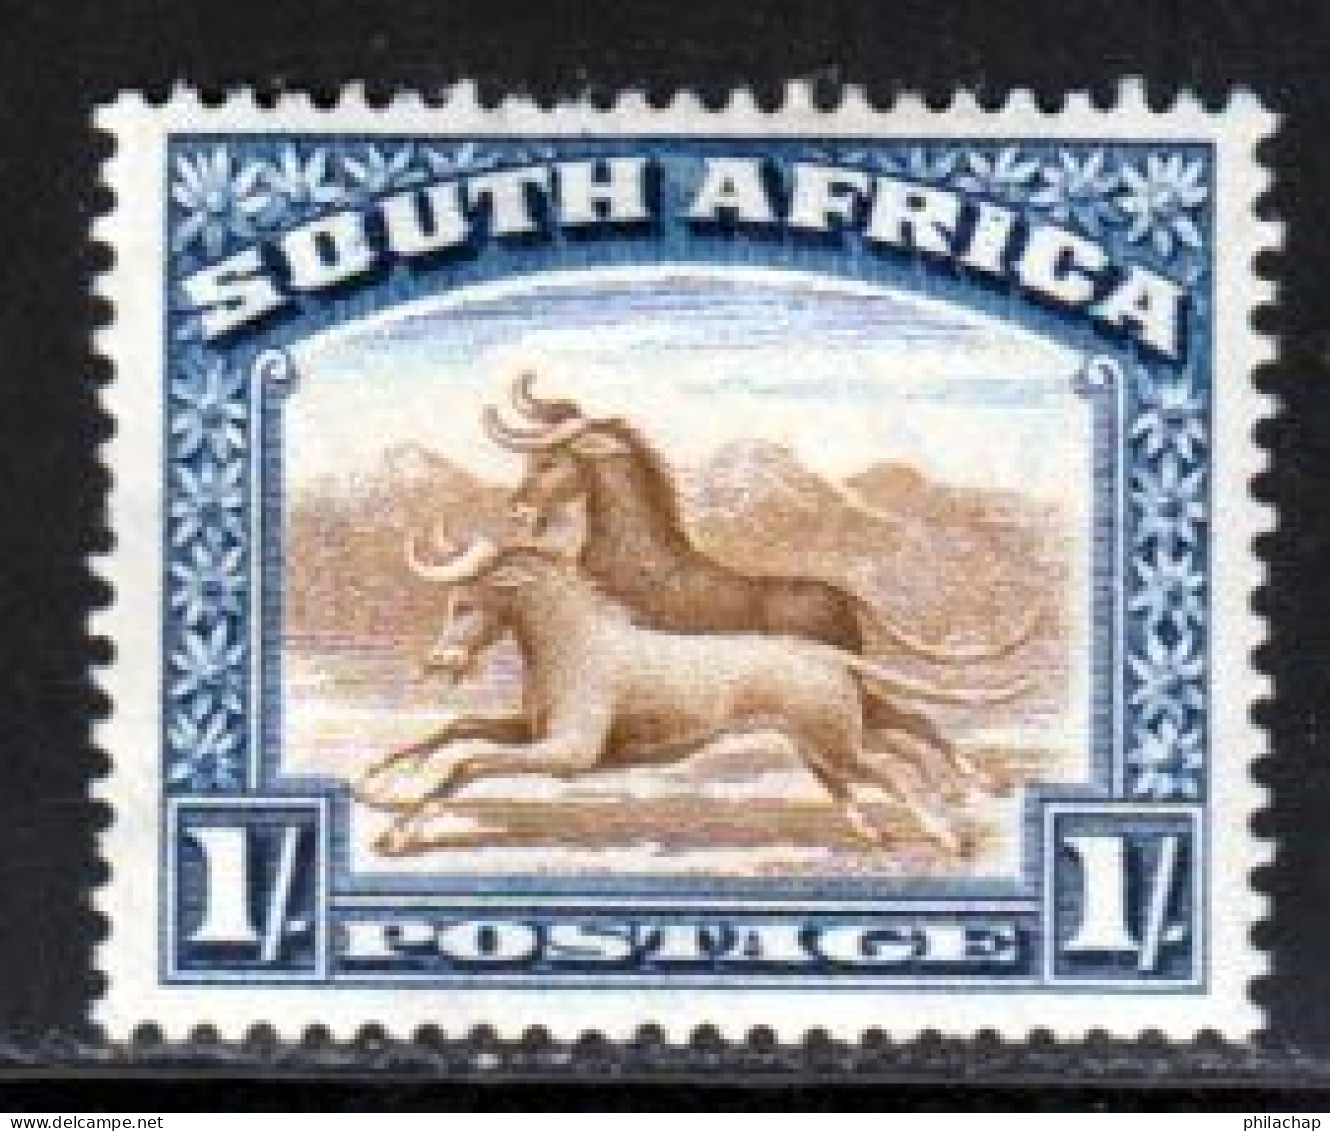 Afrique Du Sud 1927 Yvert 27 * B Charniere(s) - Ungebraucht